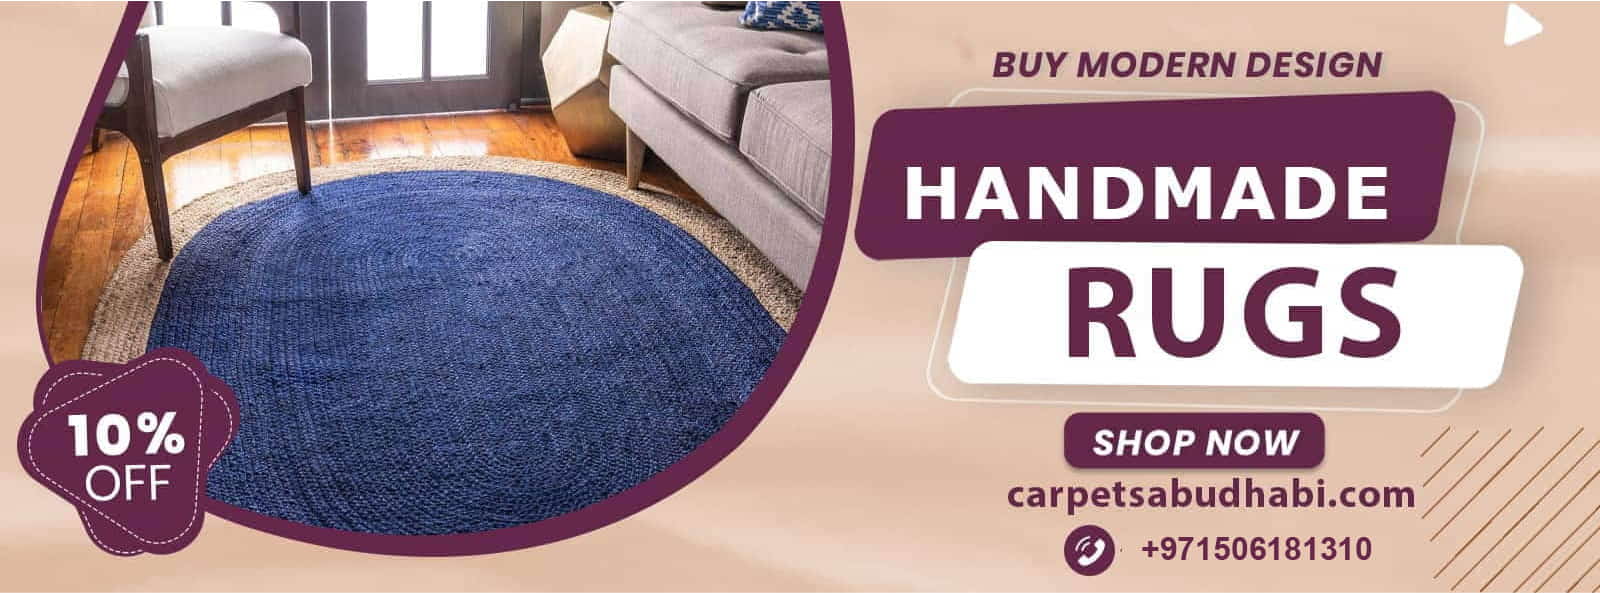 handmade rugs 1